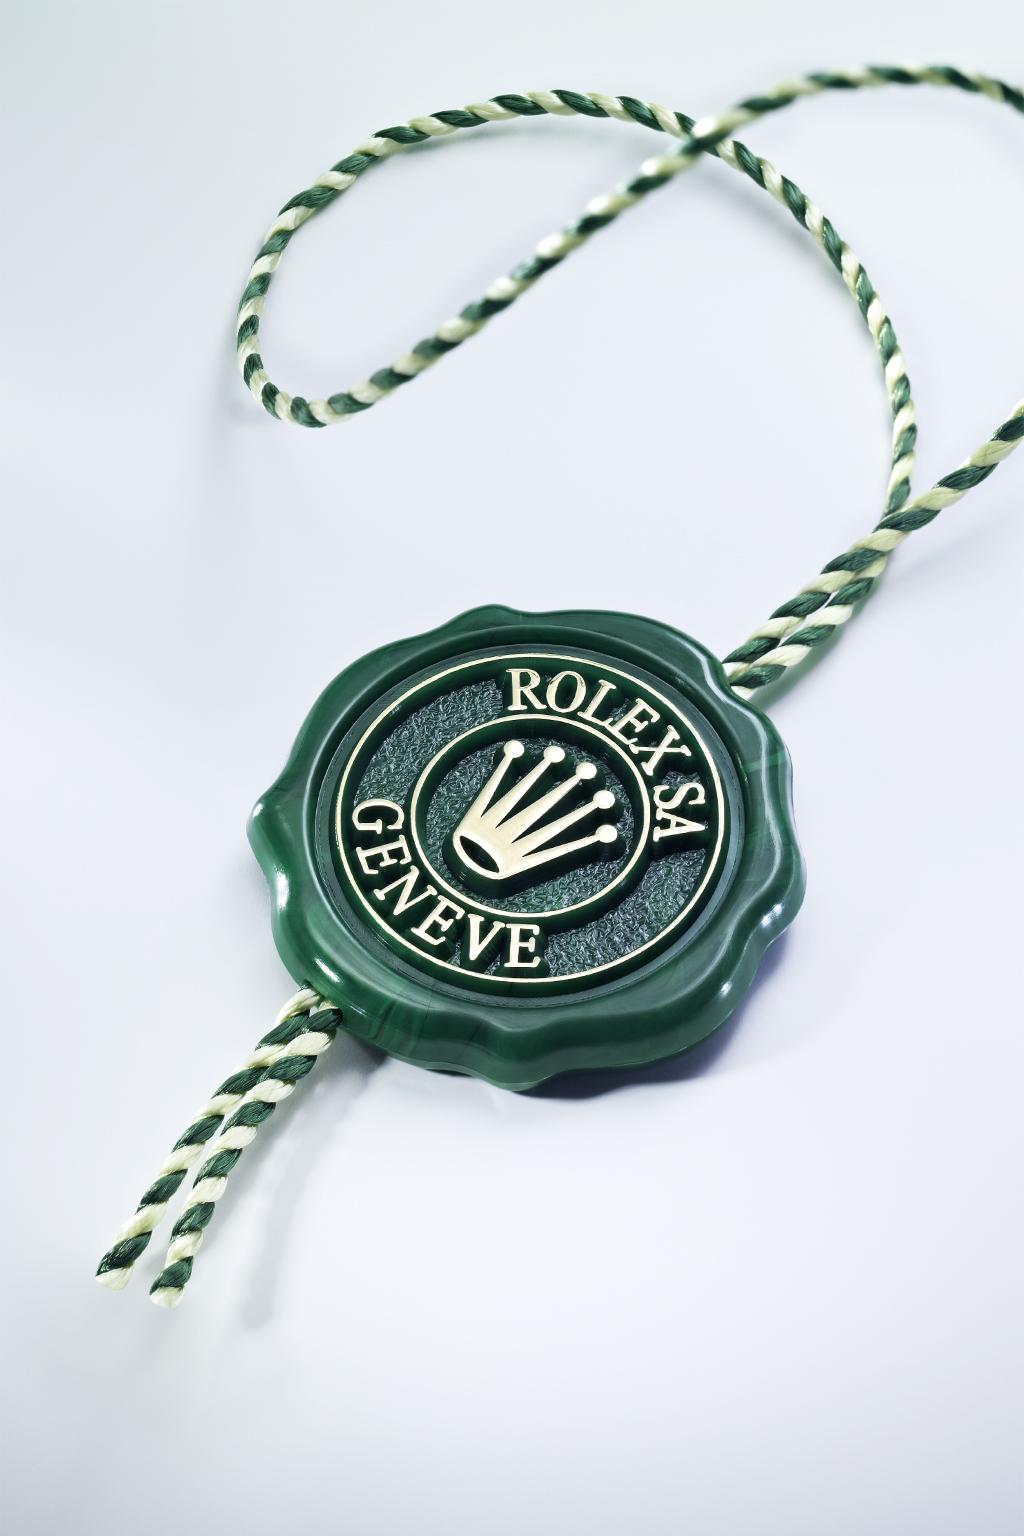 Fitur KRONOMETER SUPERLATIF Segel hijau yang menyertai setiap jam tangan Rolex adalah simbol statusnya sebagai Kronometer Superlatif.